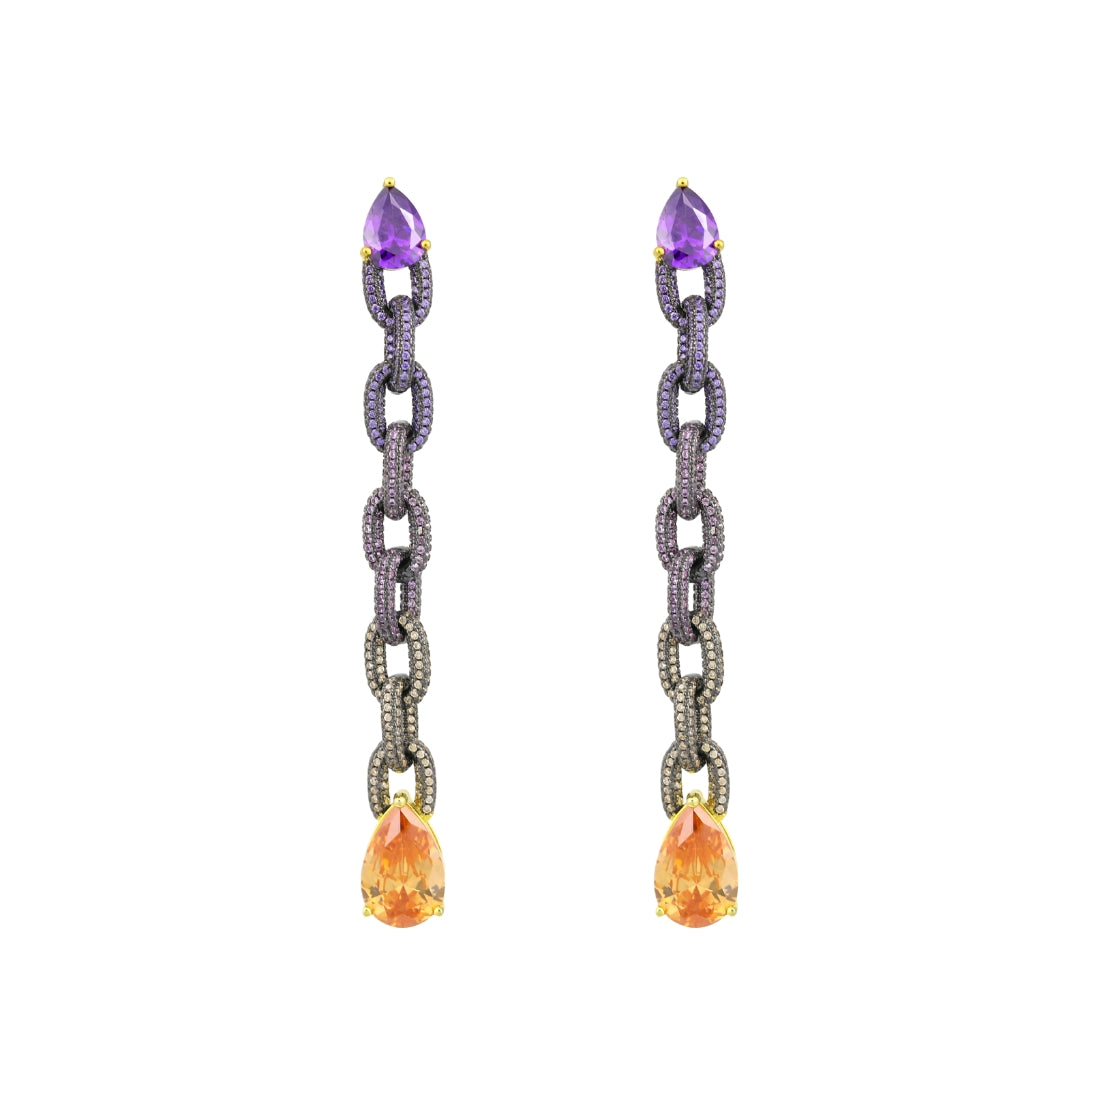 sibela-studio-coleccion-wonder-joyas-complementos-pendientes-nebu-eslabones-plata-primera-ley-925-milesimas-bano-rodio-nego-bano-oro-violeta.rosa-naranja-eslabones-joyas-cierre-tuerca